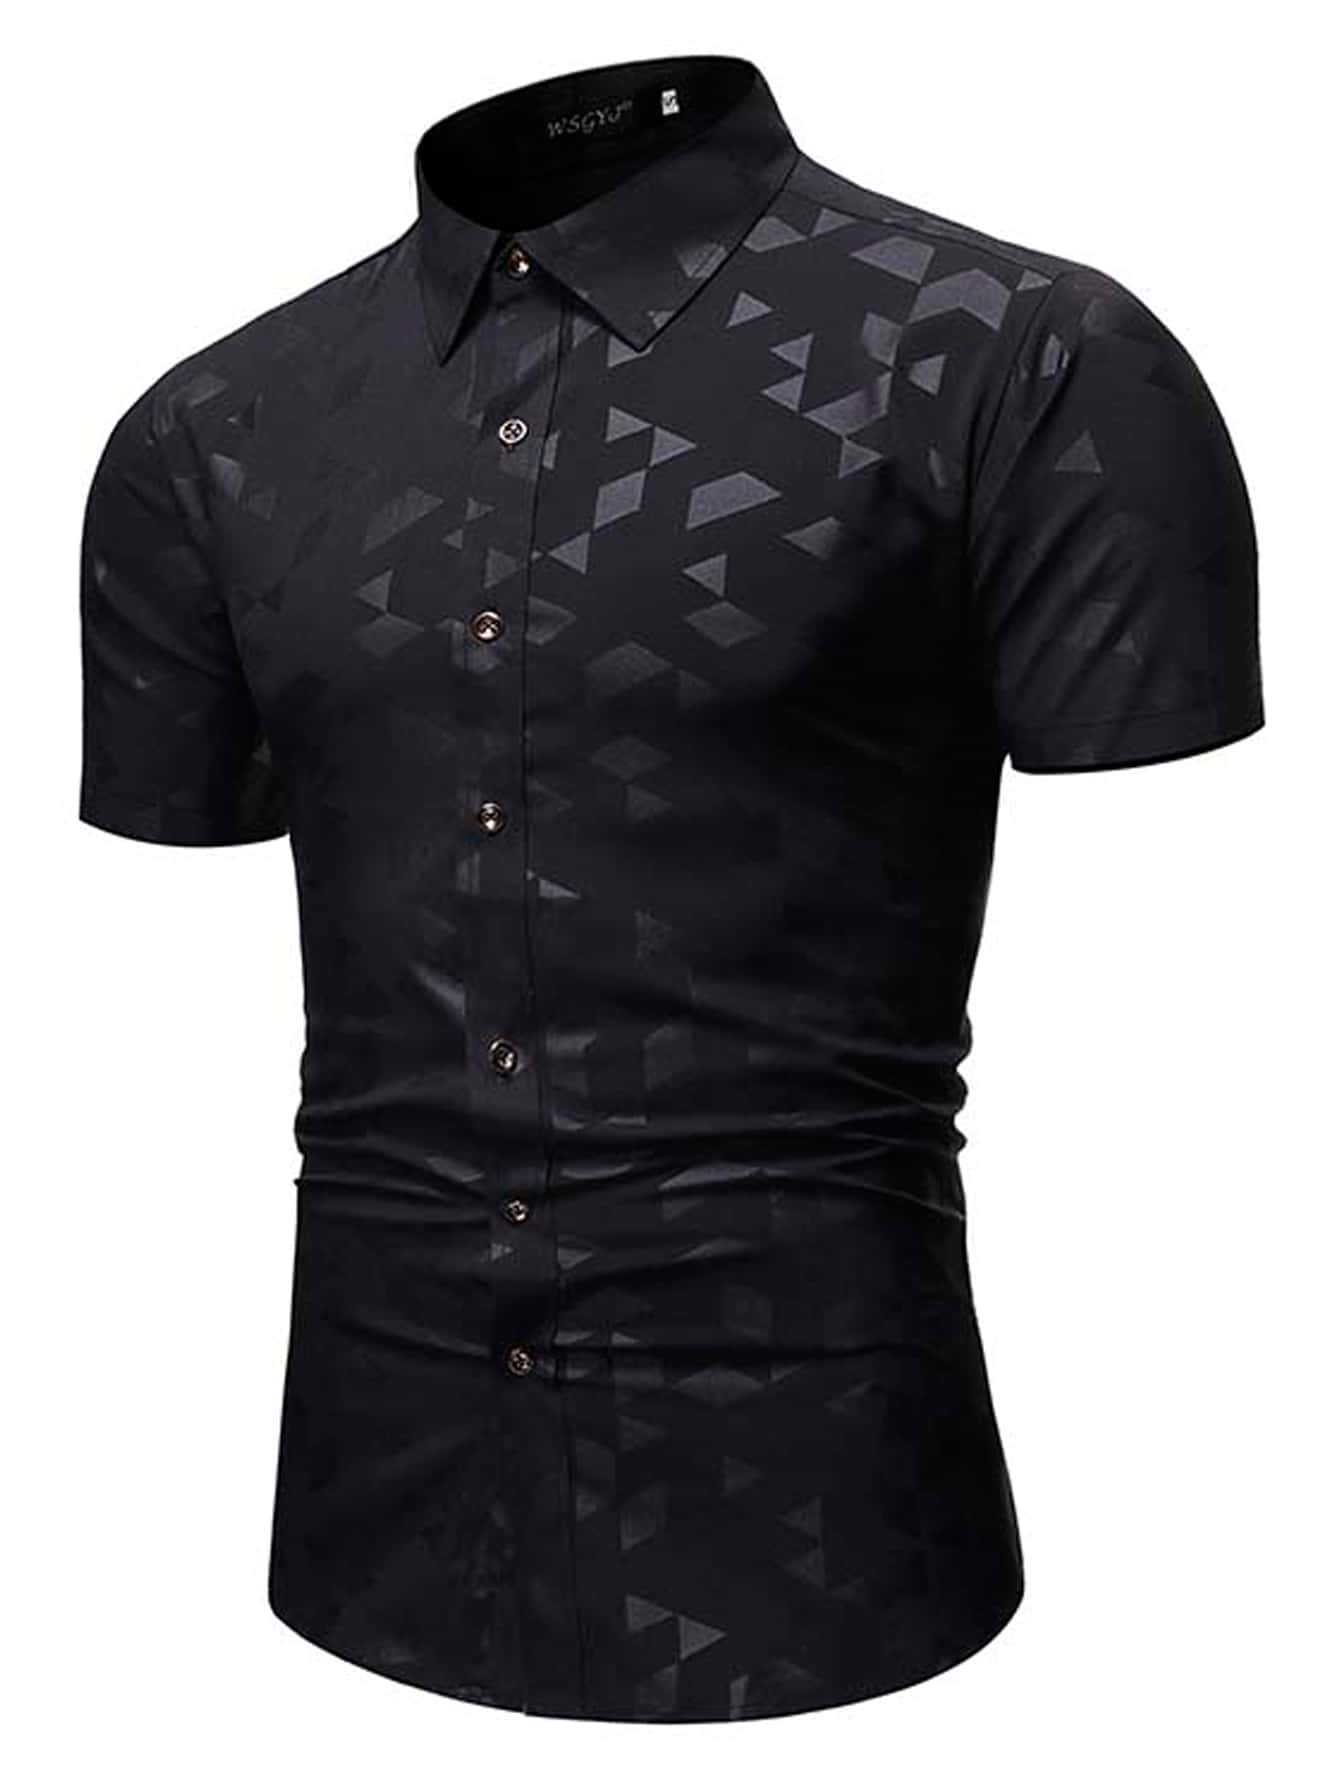 Мужская рубашка с коротким рукавом с геометрическим принтом, черный